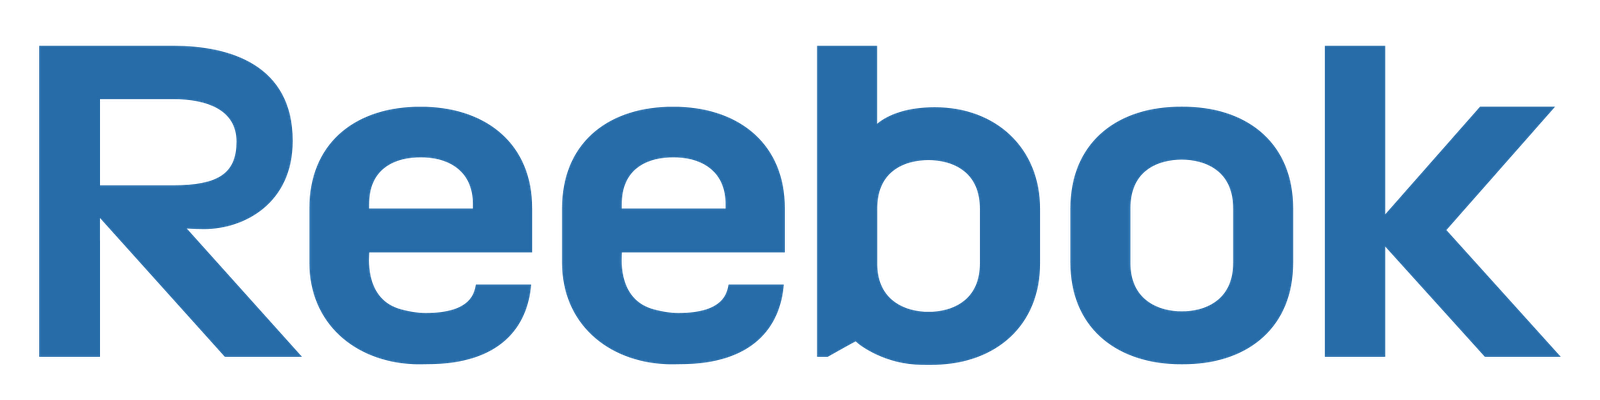 Blue reebok logos #7035